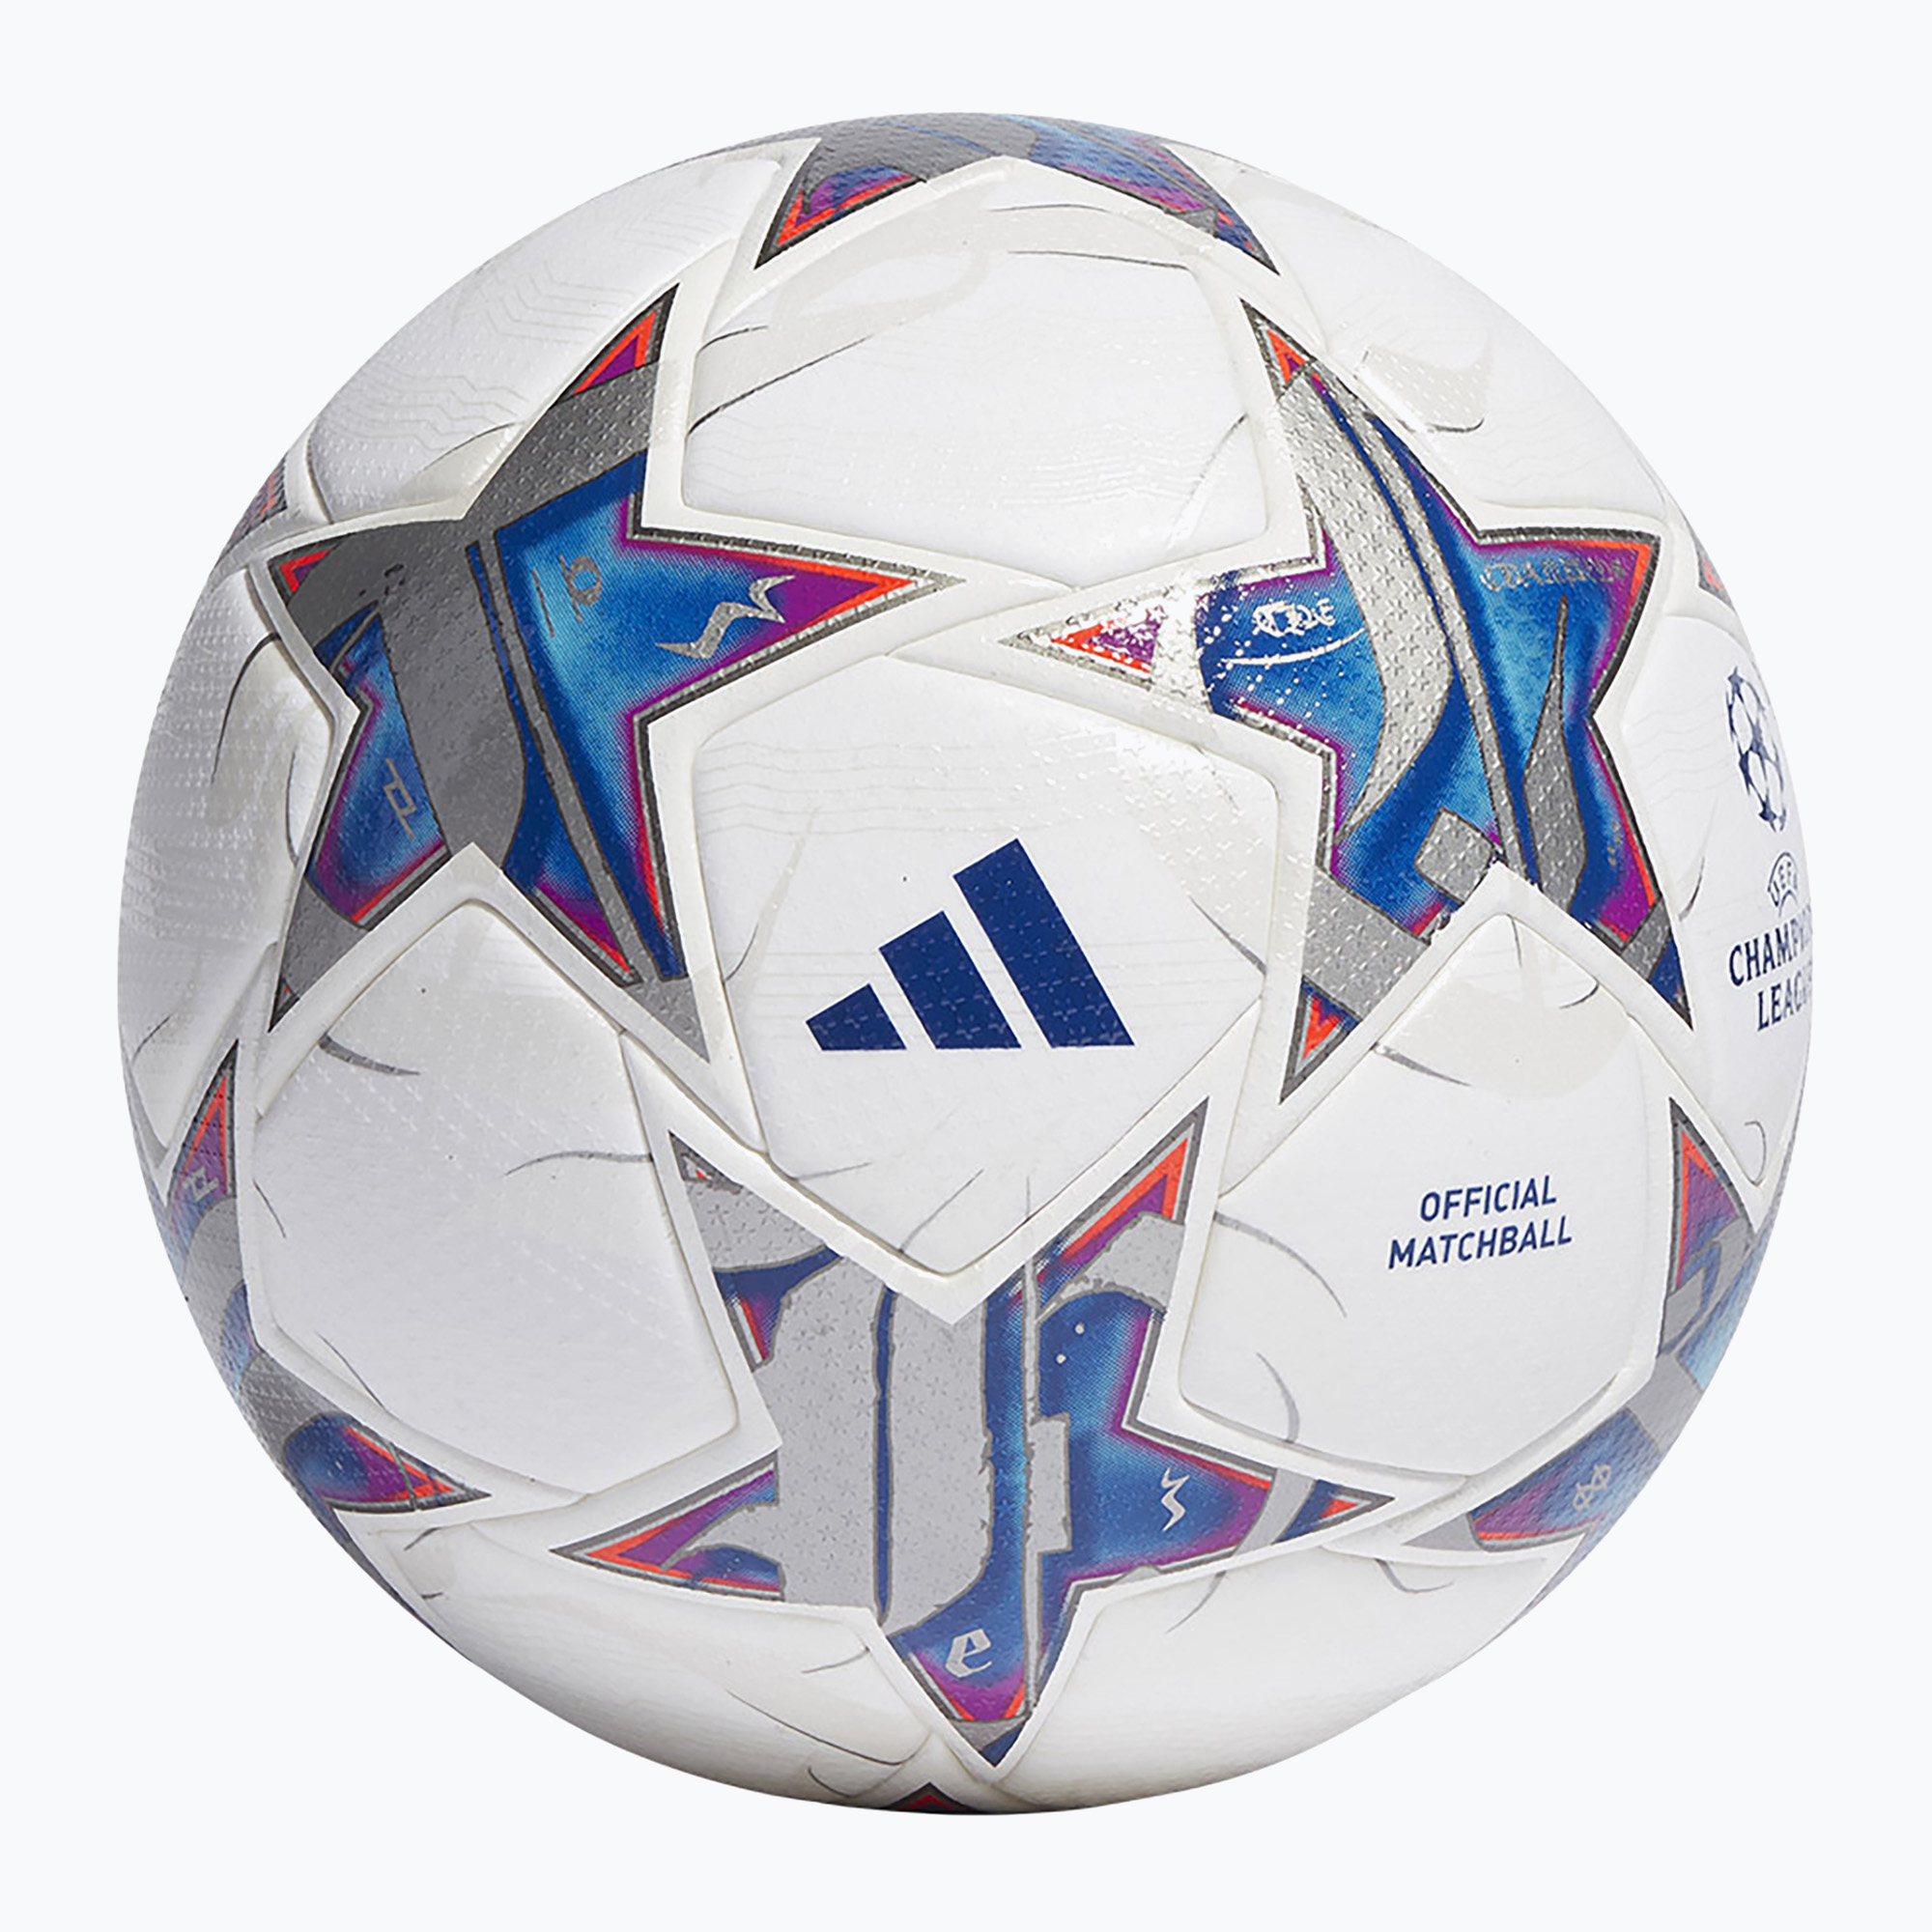 Minge de fotbal adidas UCL PRO 23/24 white/silver metallic/bright cyan/royal blue rozmiar 5